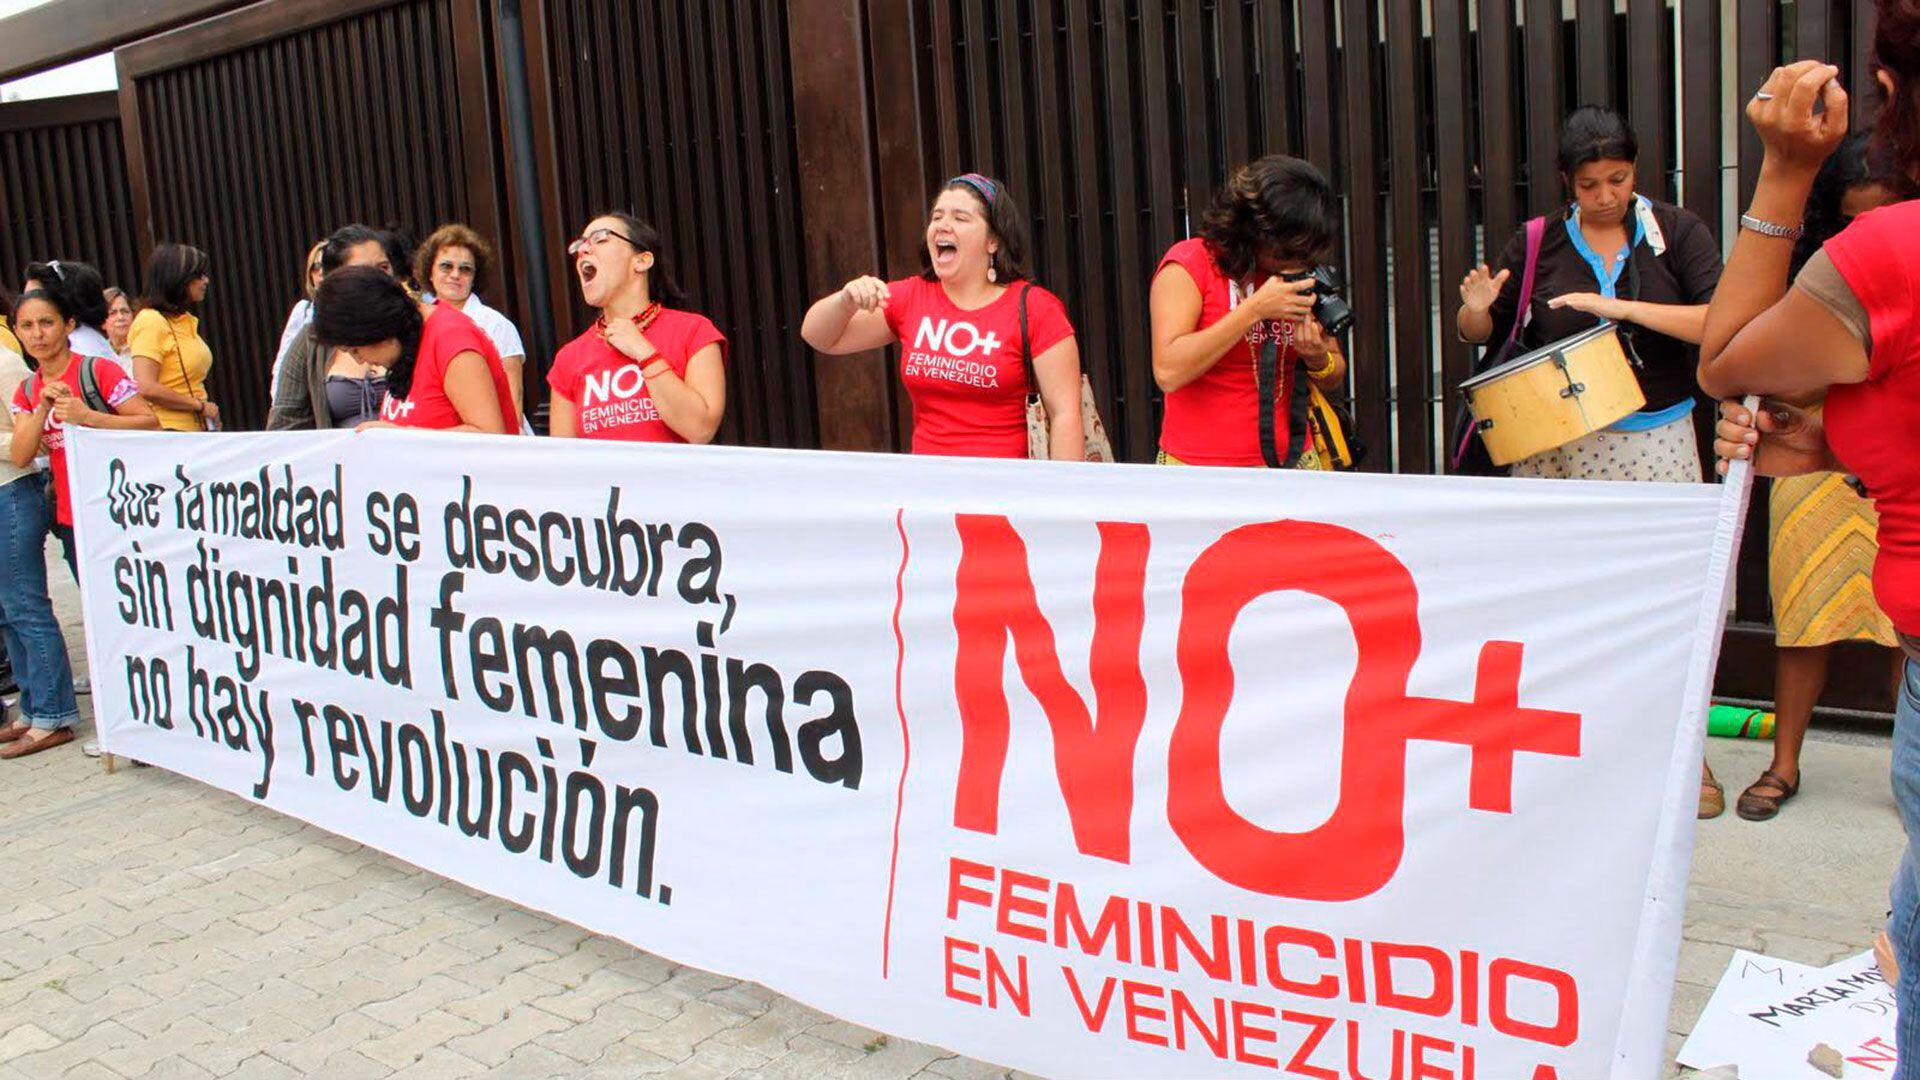 En Venezuela se registraron 13 femicidios durante enero pasado (Archivo)